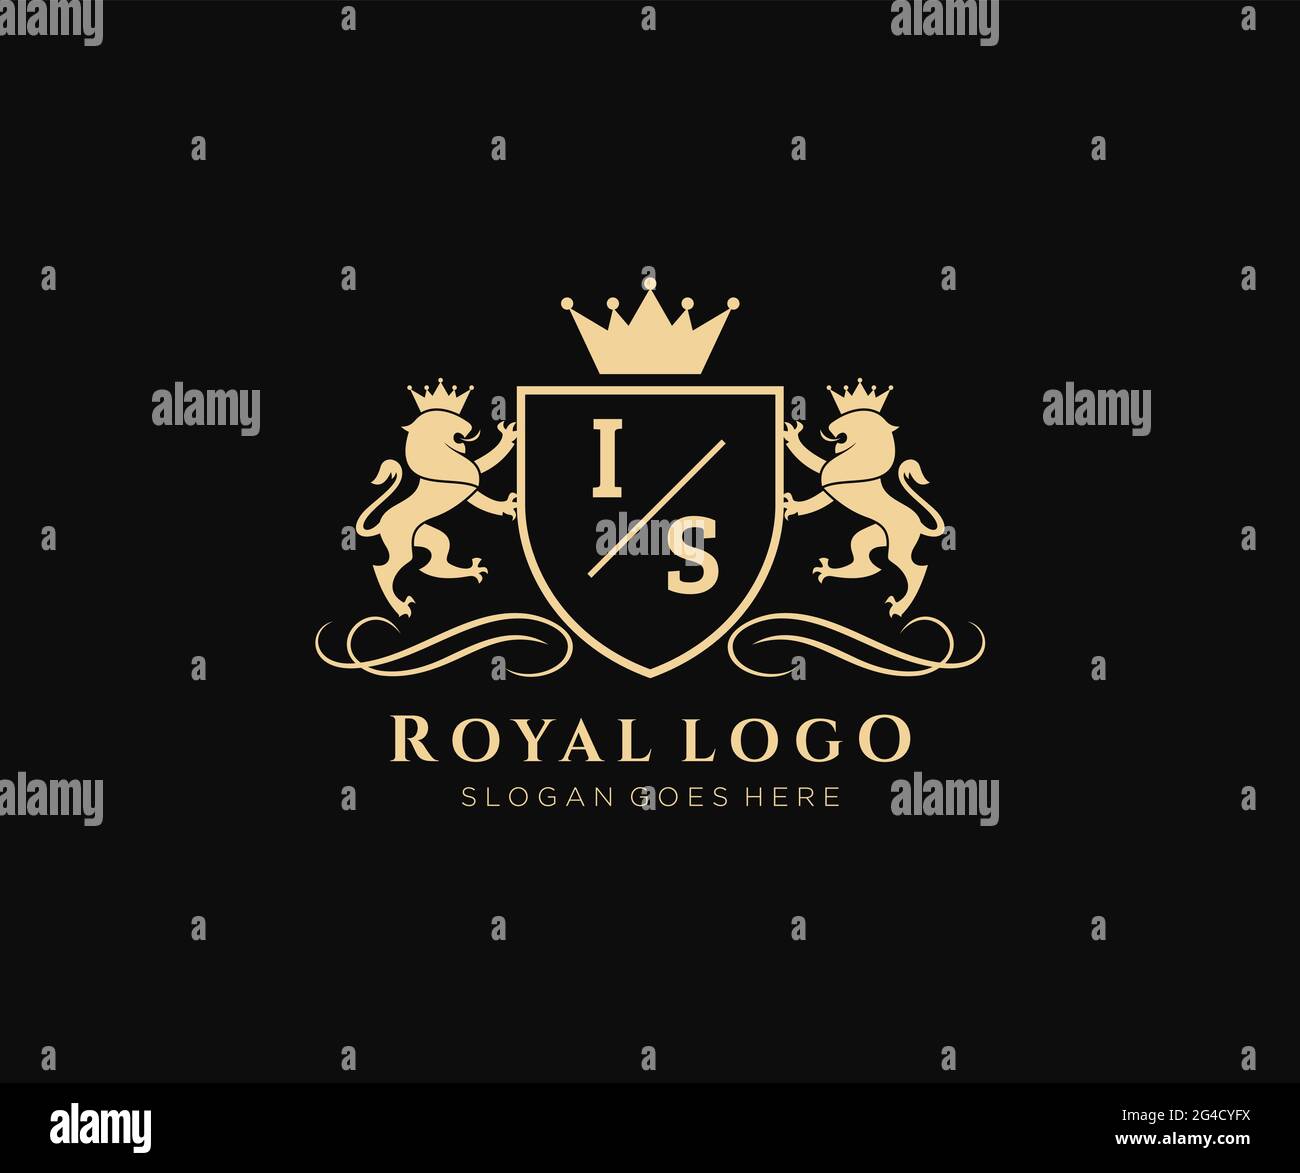 IST Buchstabe Lion Royal Luxury heraldic, Crest Logo Vorlage in Vektorgrafik für Restaurant, Royalty, Boutique, Cafe, Hotel, Heraldik, Schmuck, Mode und Stock Vektor